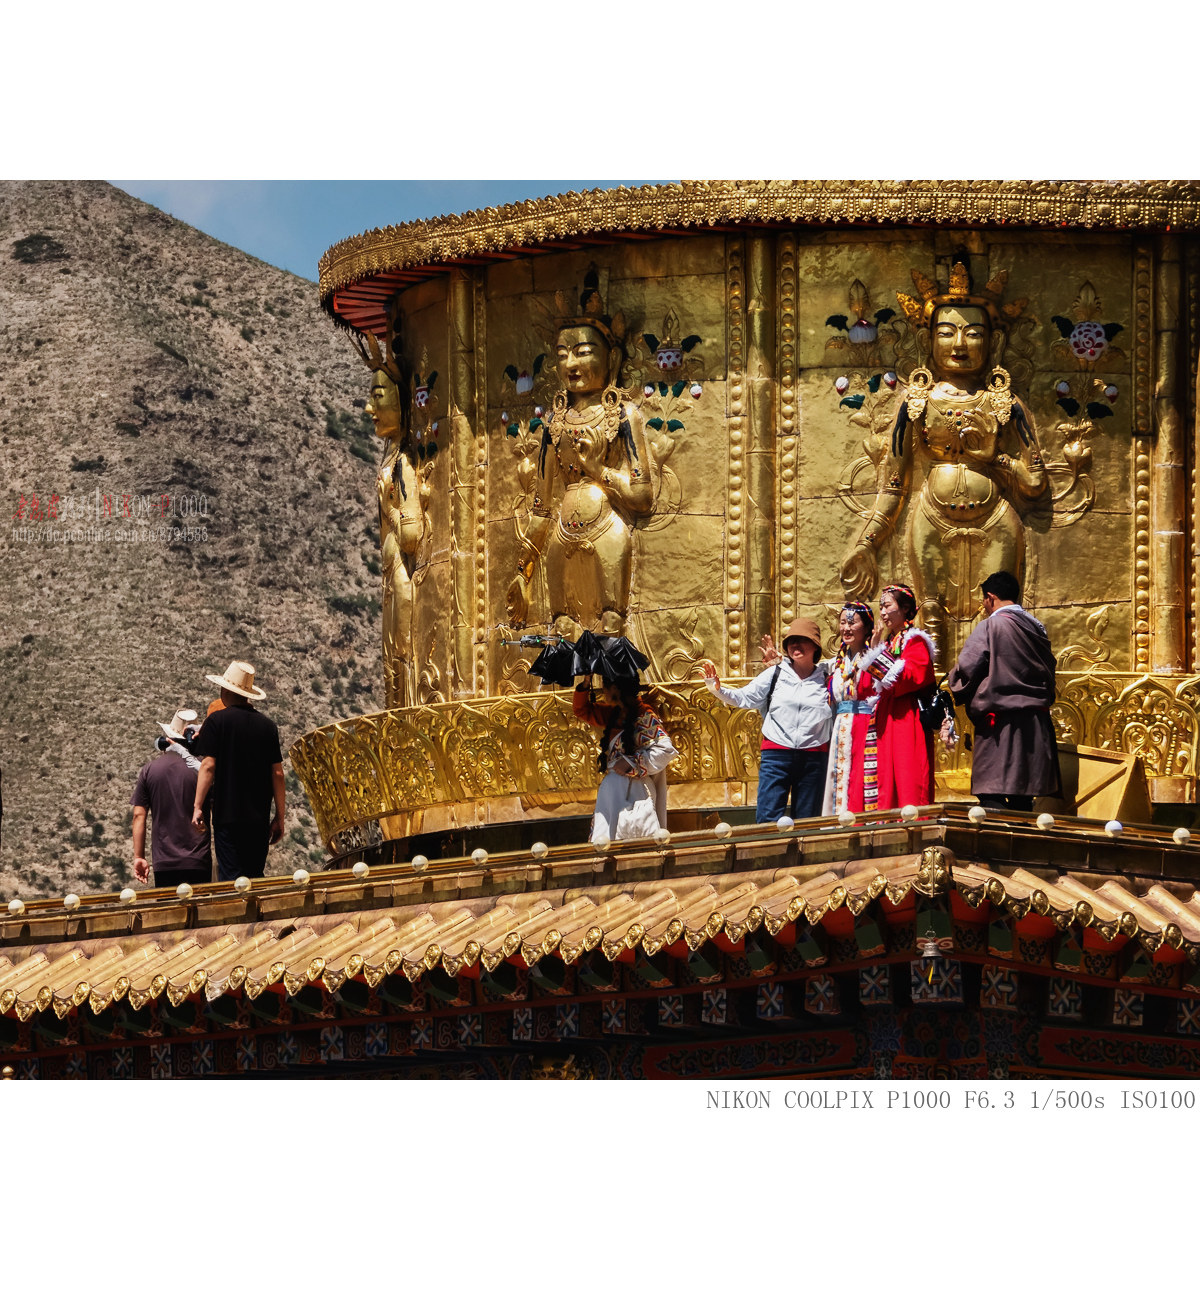 甘南夏河拉卜楞寺贡唐宝塔 - 中国国家地理最美观景拍摄点